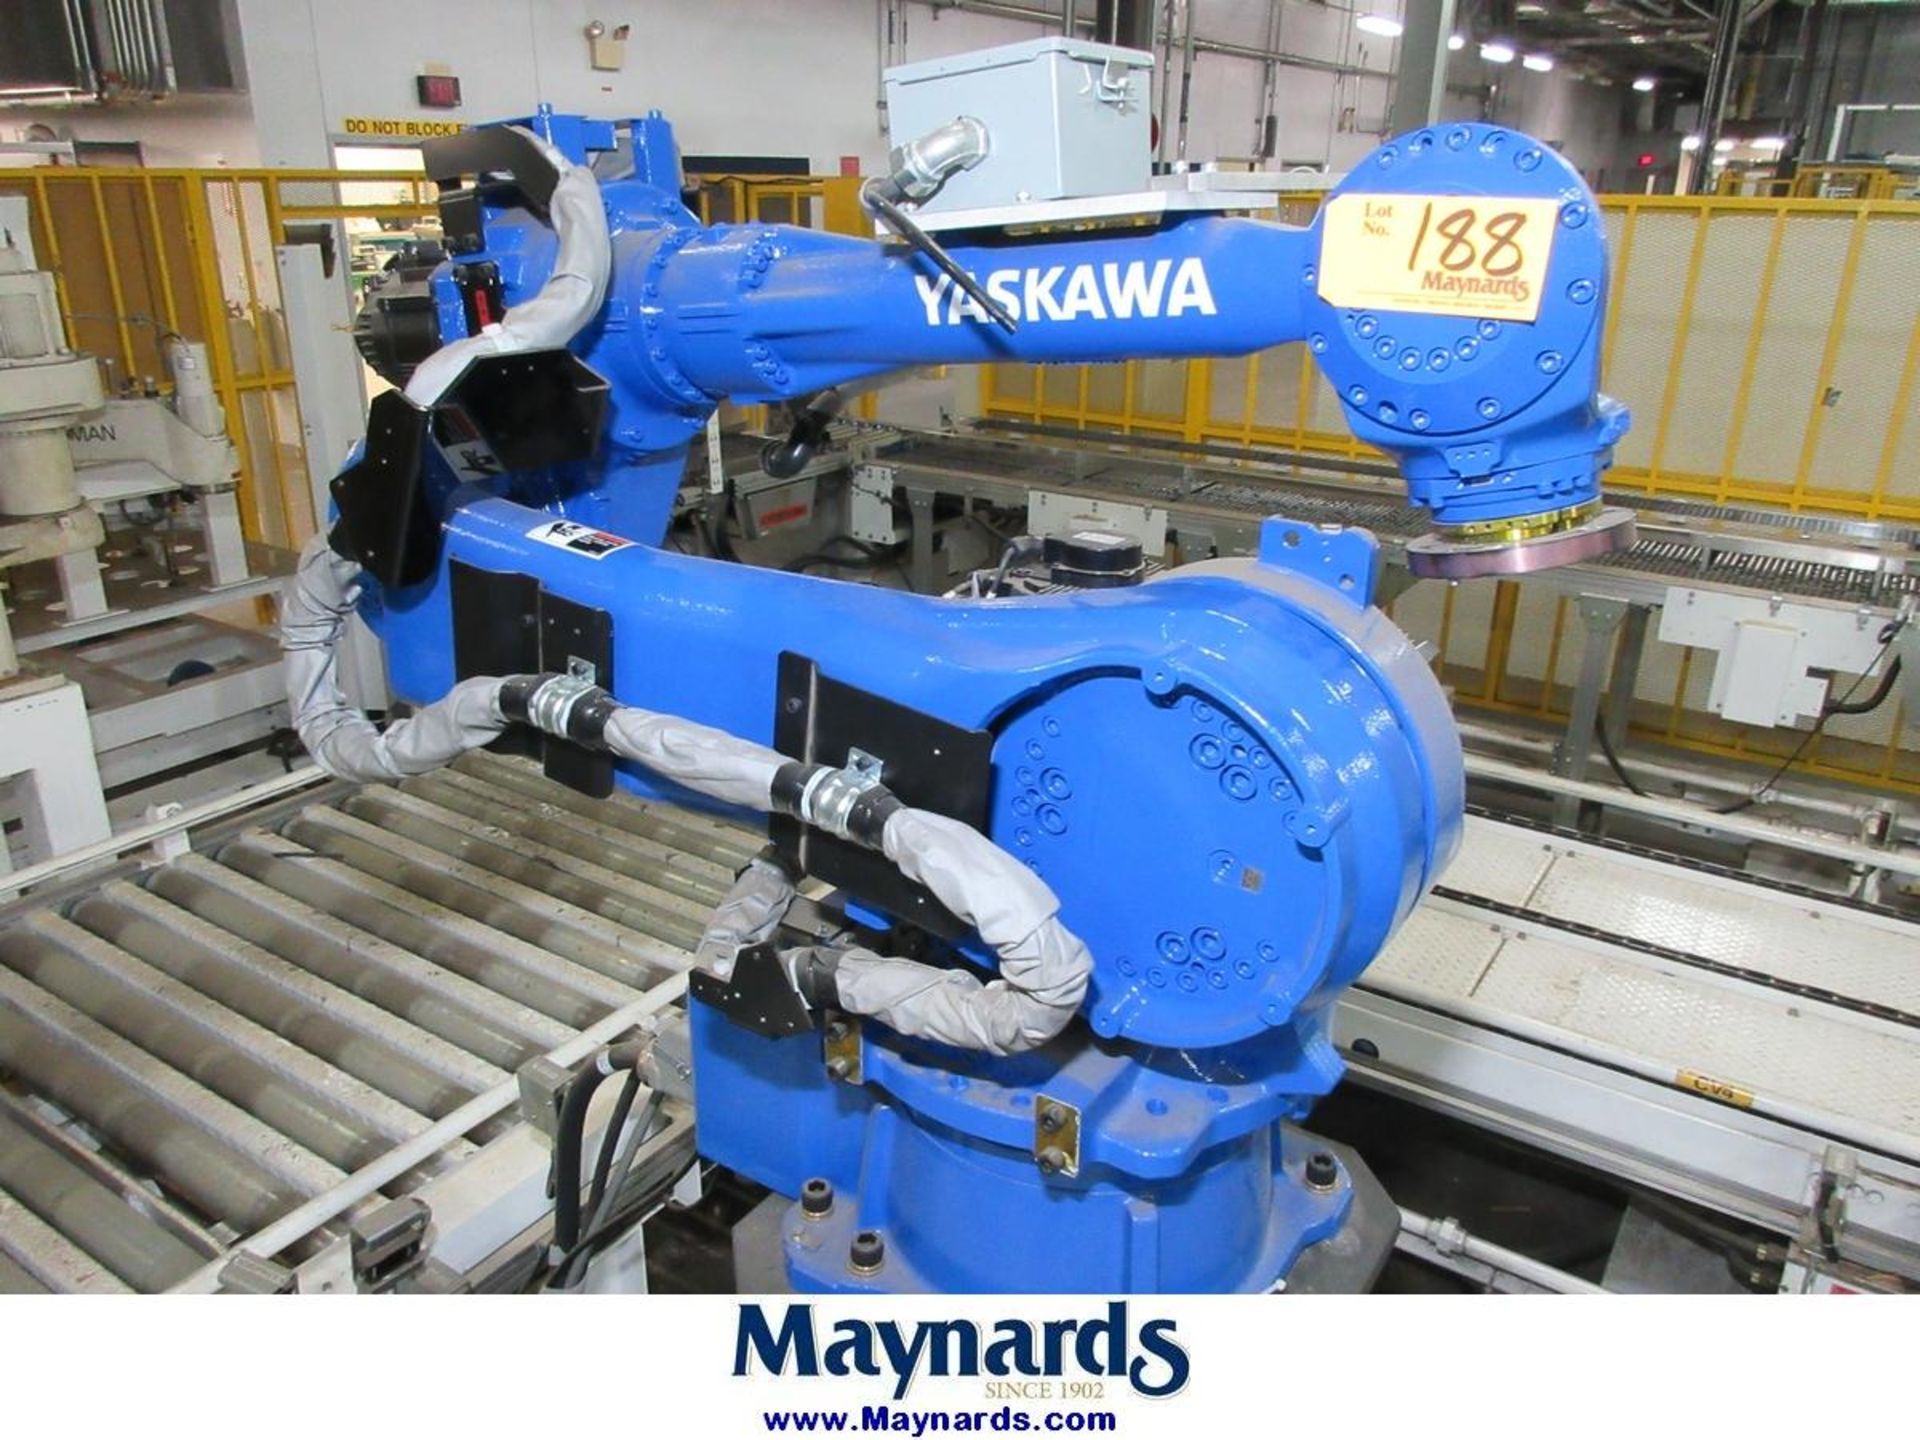 2017 Yaskawa Motoman MPL80II Type YR-MPL0080-J00 Material Handling Robot - Image 2 of 11